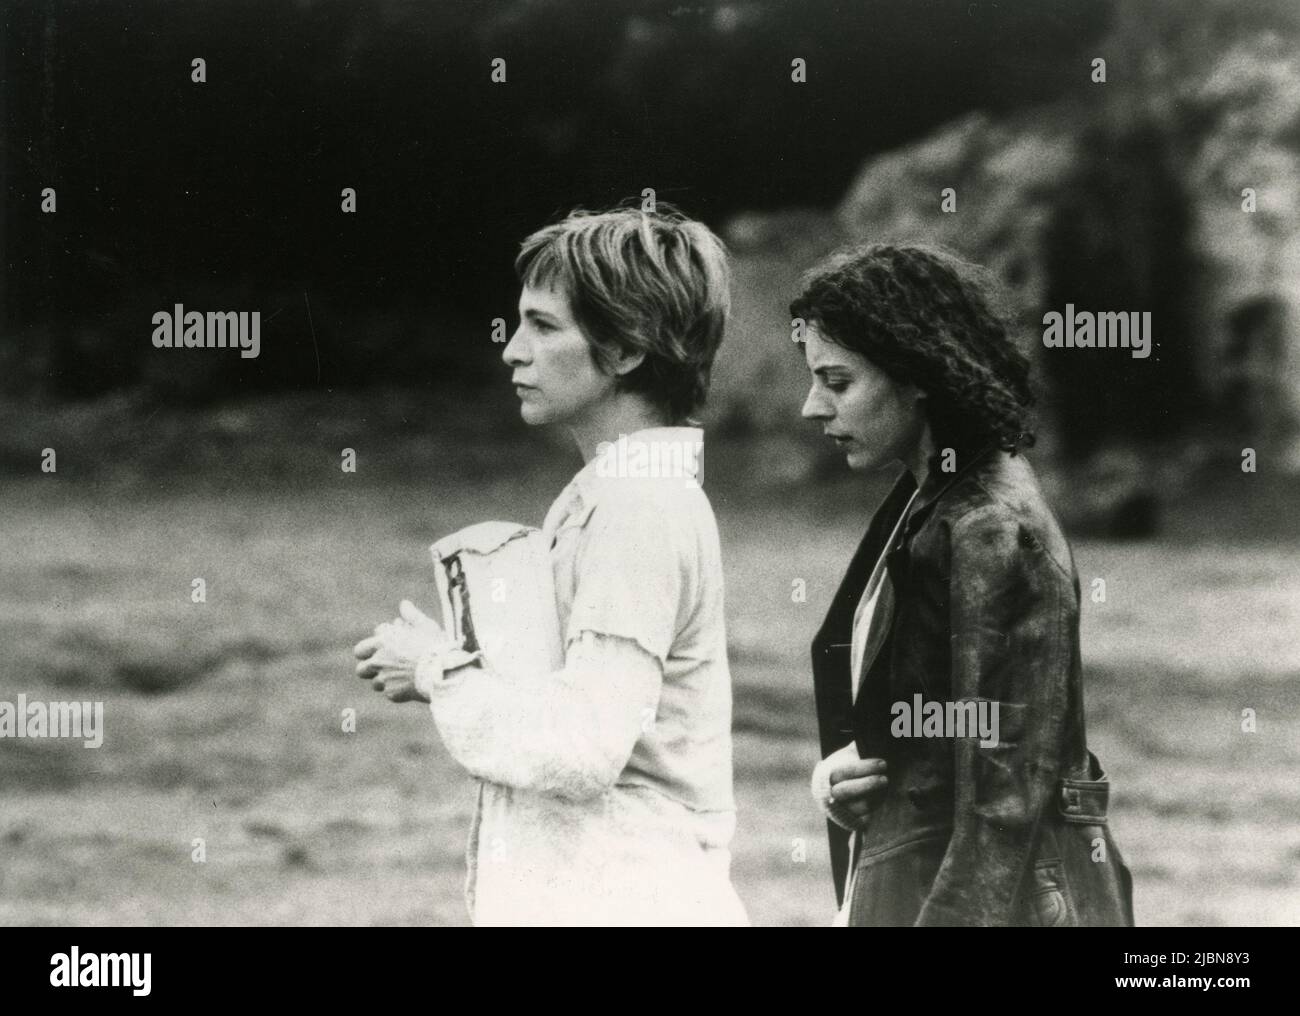 Les actrices Amanda Plummer et Saskia Reeves dans le film Butterfly Kiss, USA 1995 Banque D'Images